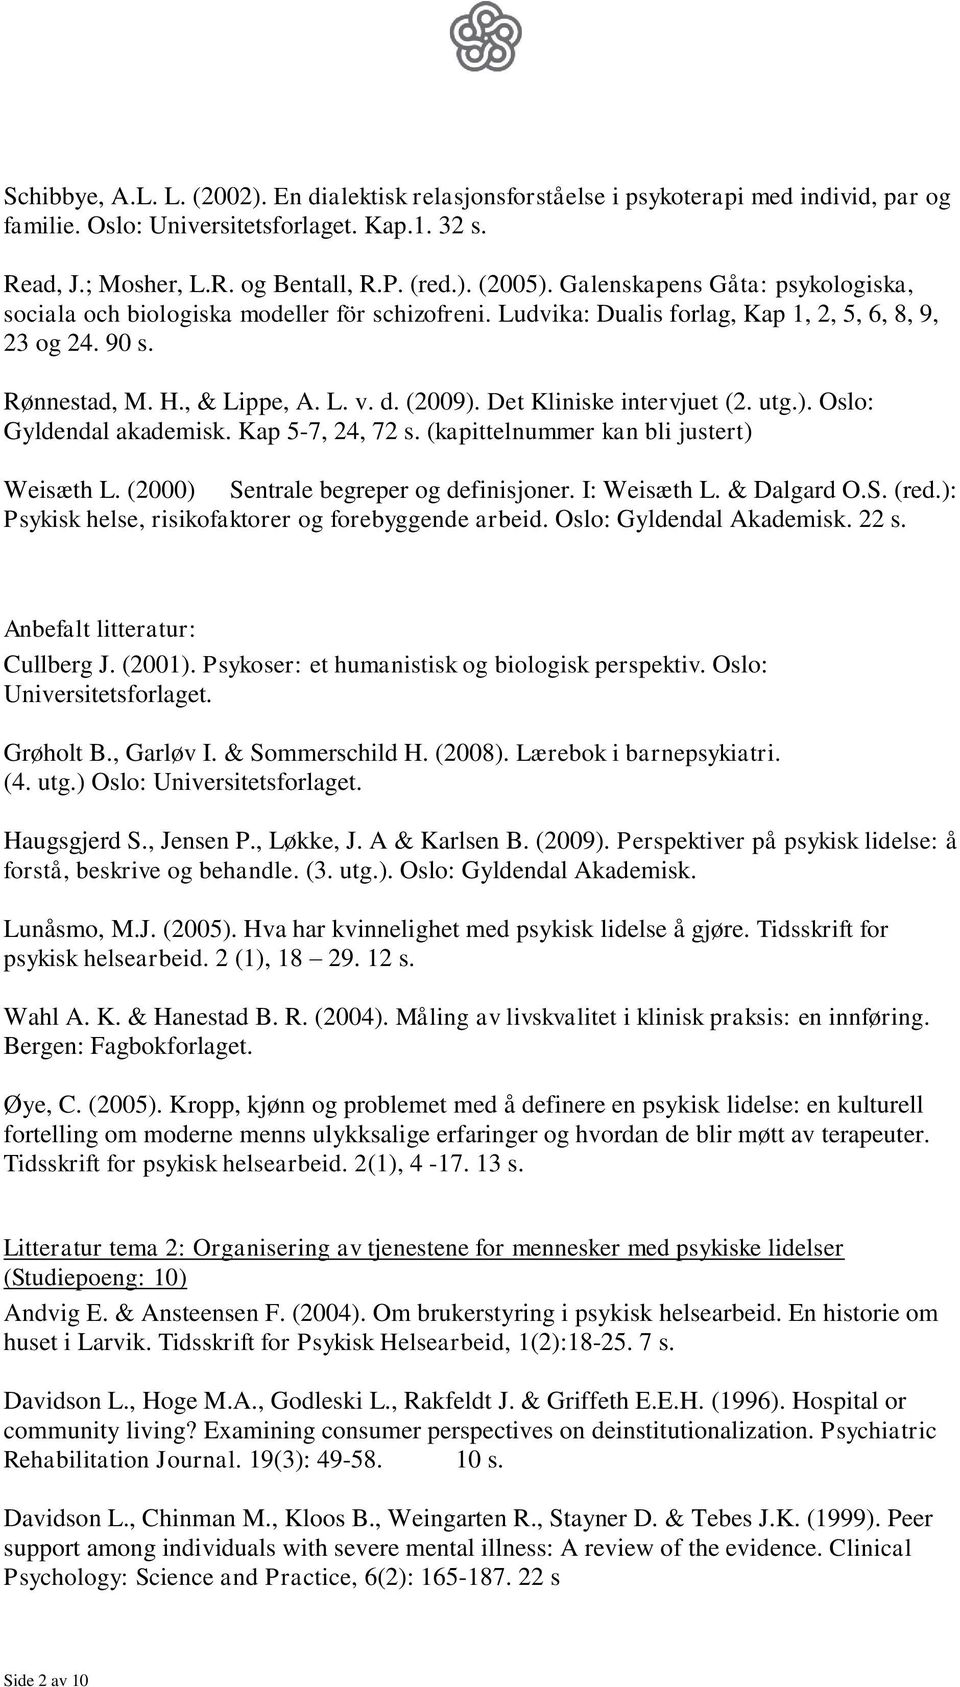 Det Kliniske intervjuet (2. utg.). Oslo: Gyldendal akademisk. Kap 5-7, 24, 72 s. (kapittelnummer kan bli justert) Weisæth L. (2000) Sentrale begreper og definisjoner. I: Weisæth L. & Dalgard O.S. (red.